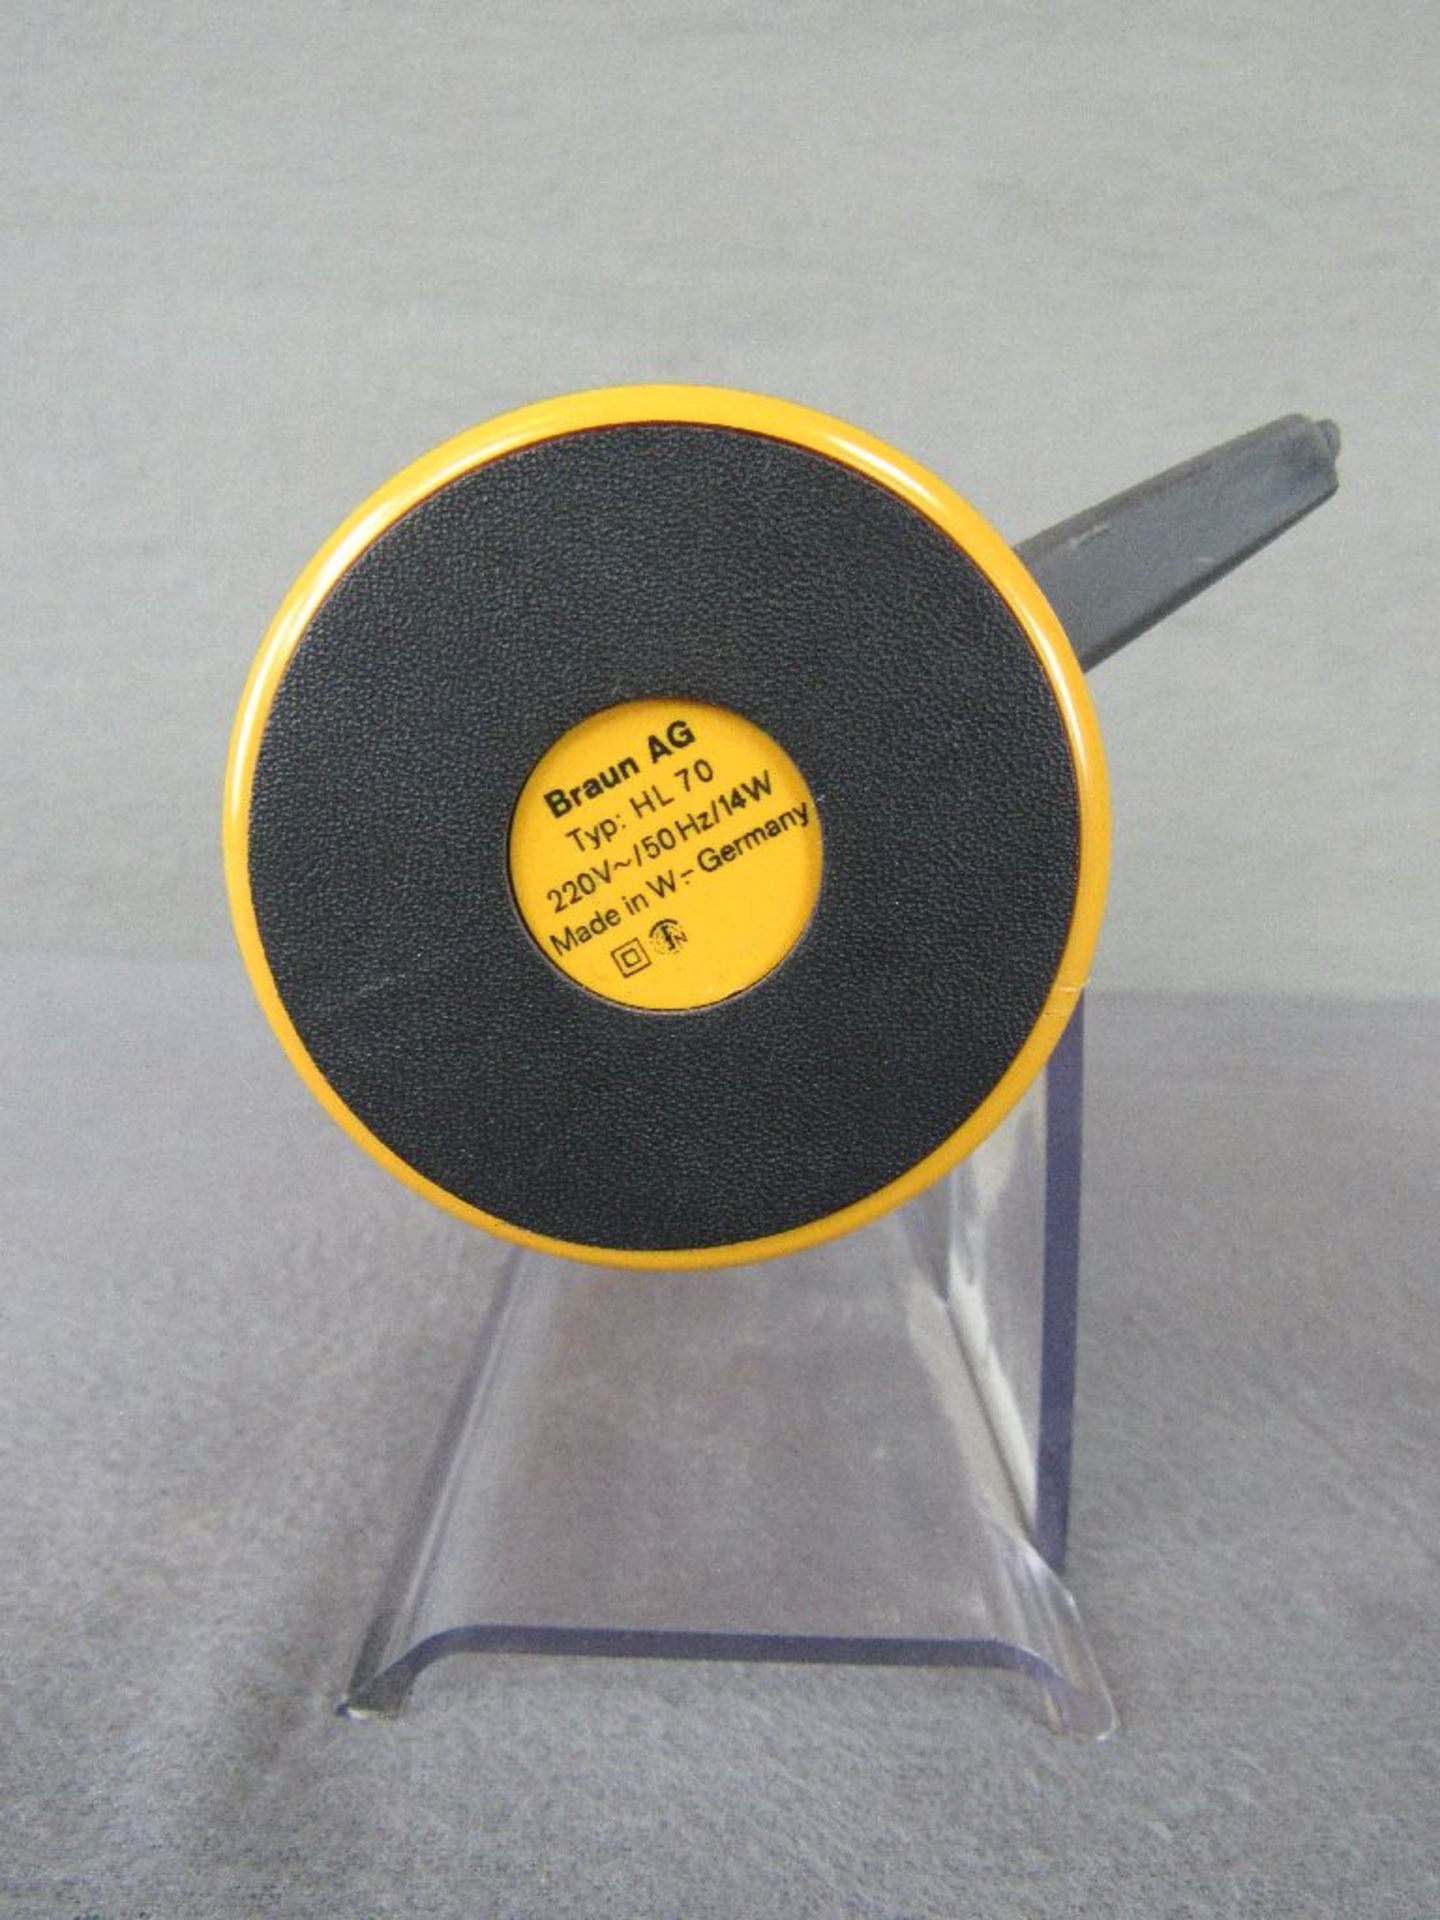 Vintage Braun HL70 Tischlüfter ungeprüft Kable abgeschnitten - Image 3 of 5